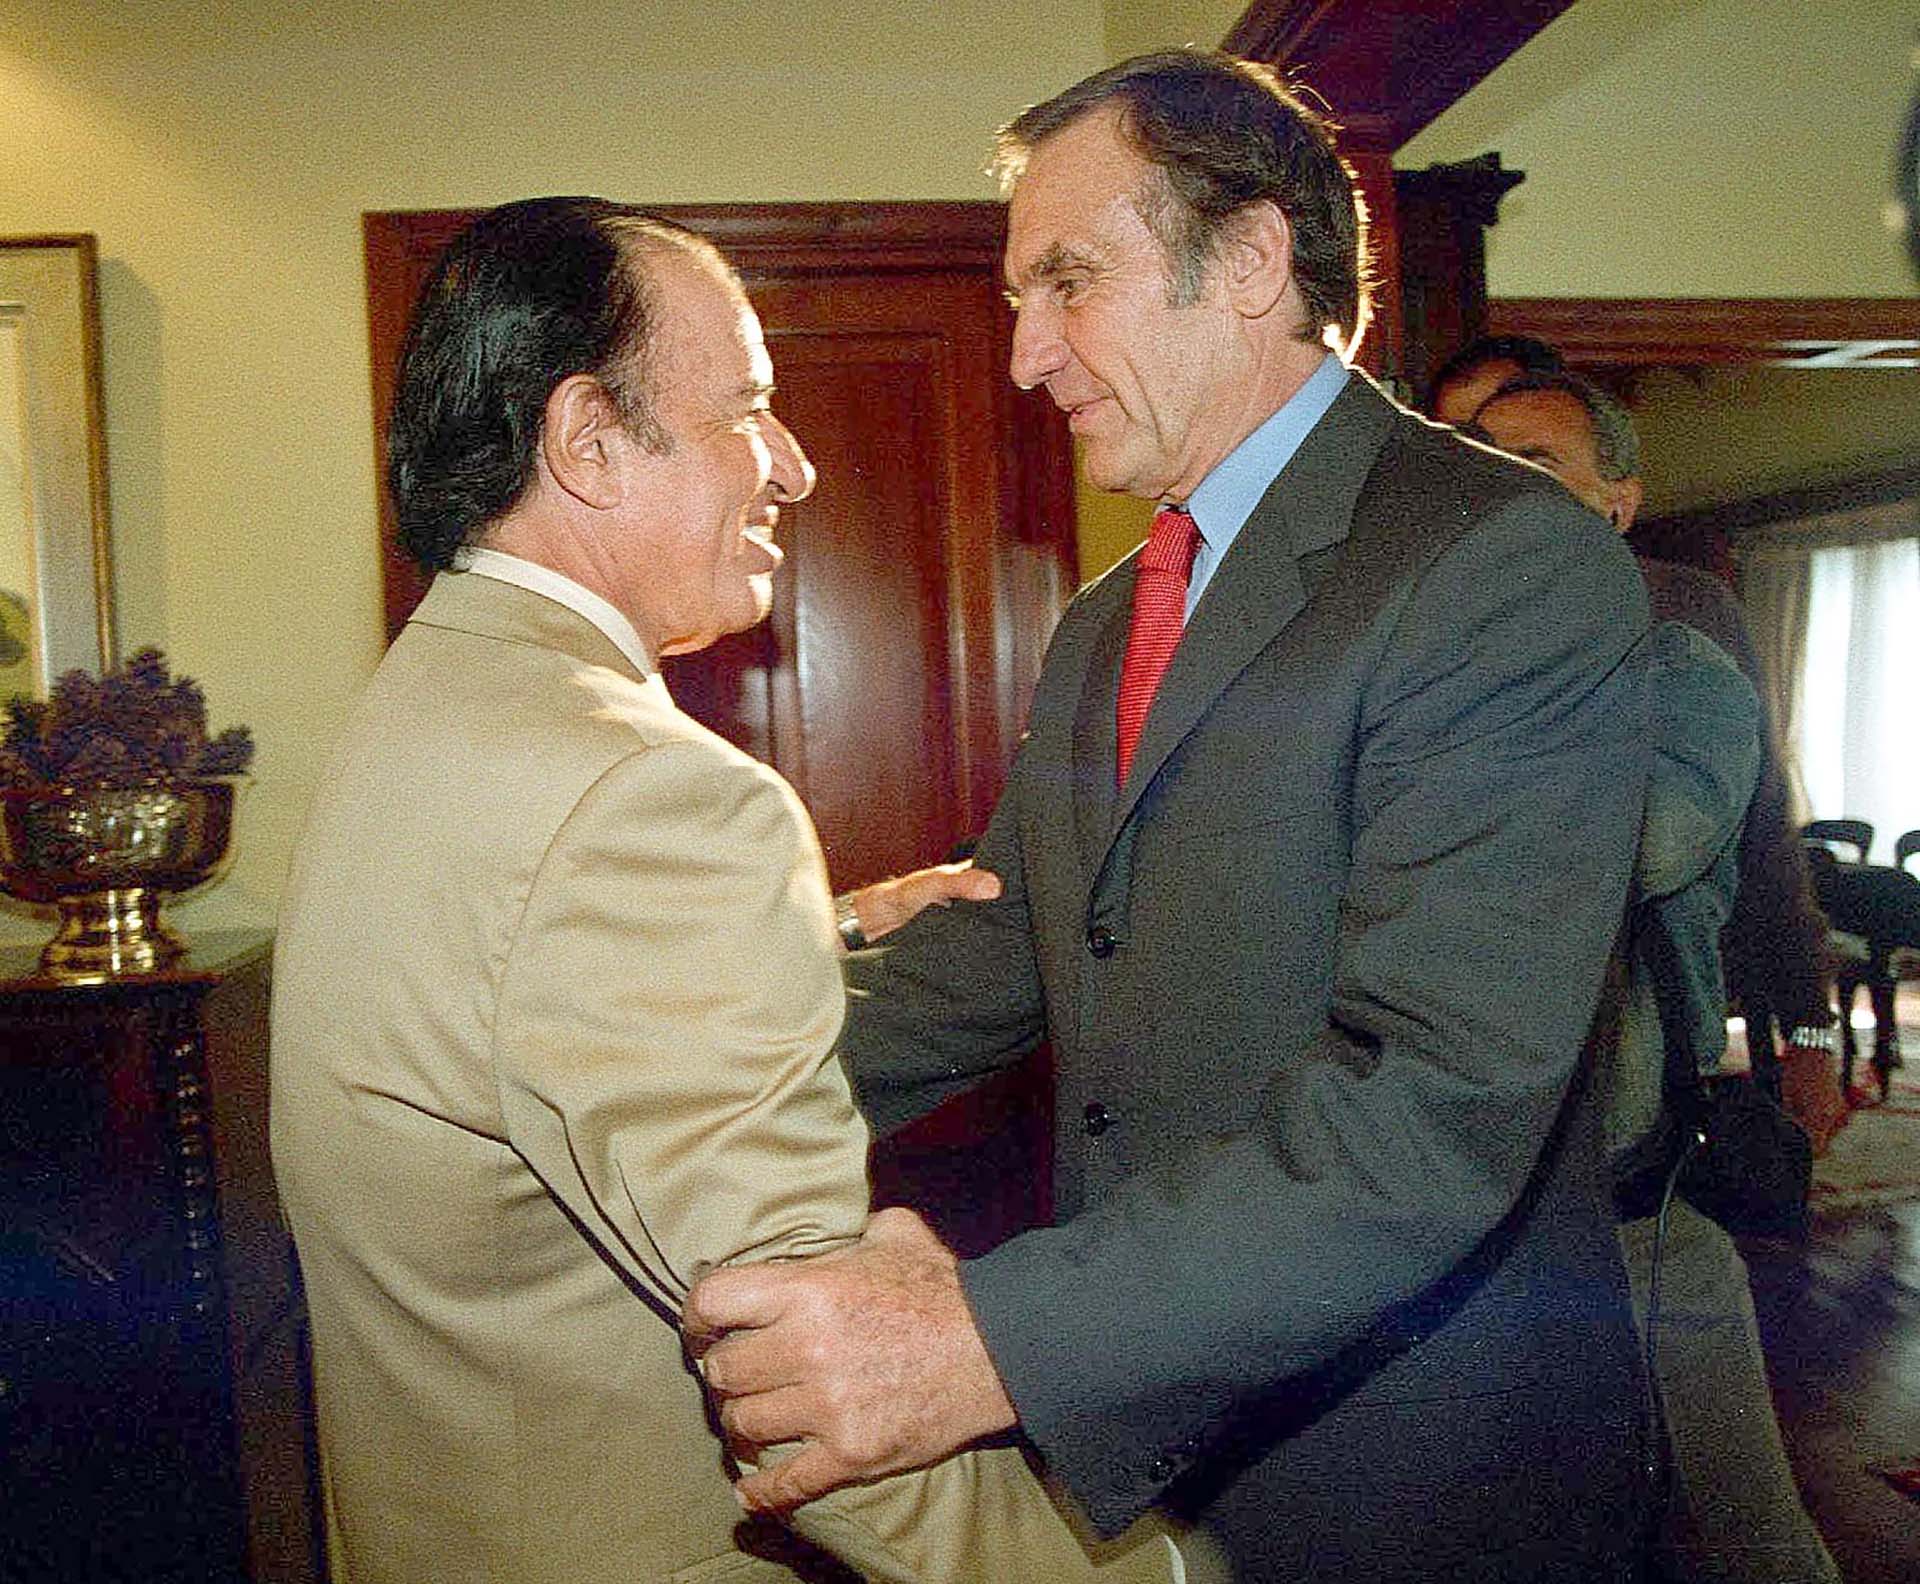 El gobernador de Santa Fe, Carlos Reutemann, recibió al por ese entonces candidato justicialista, Carlos Menem, quien aspiraba a regresar a la presidencia